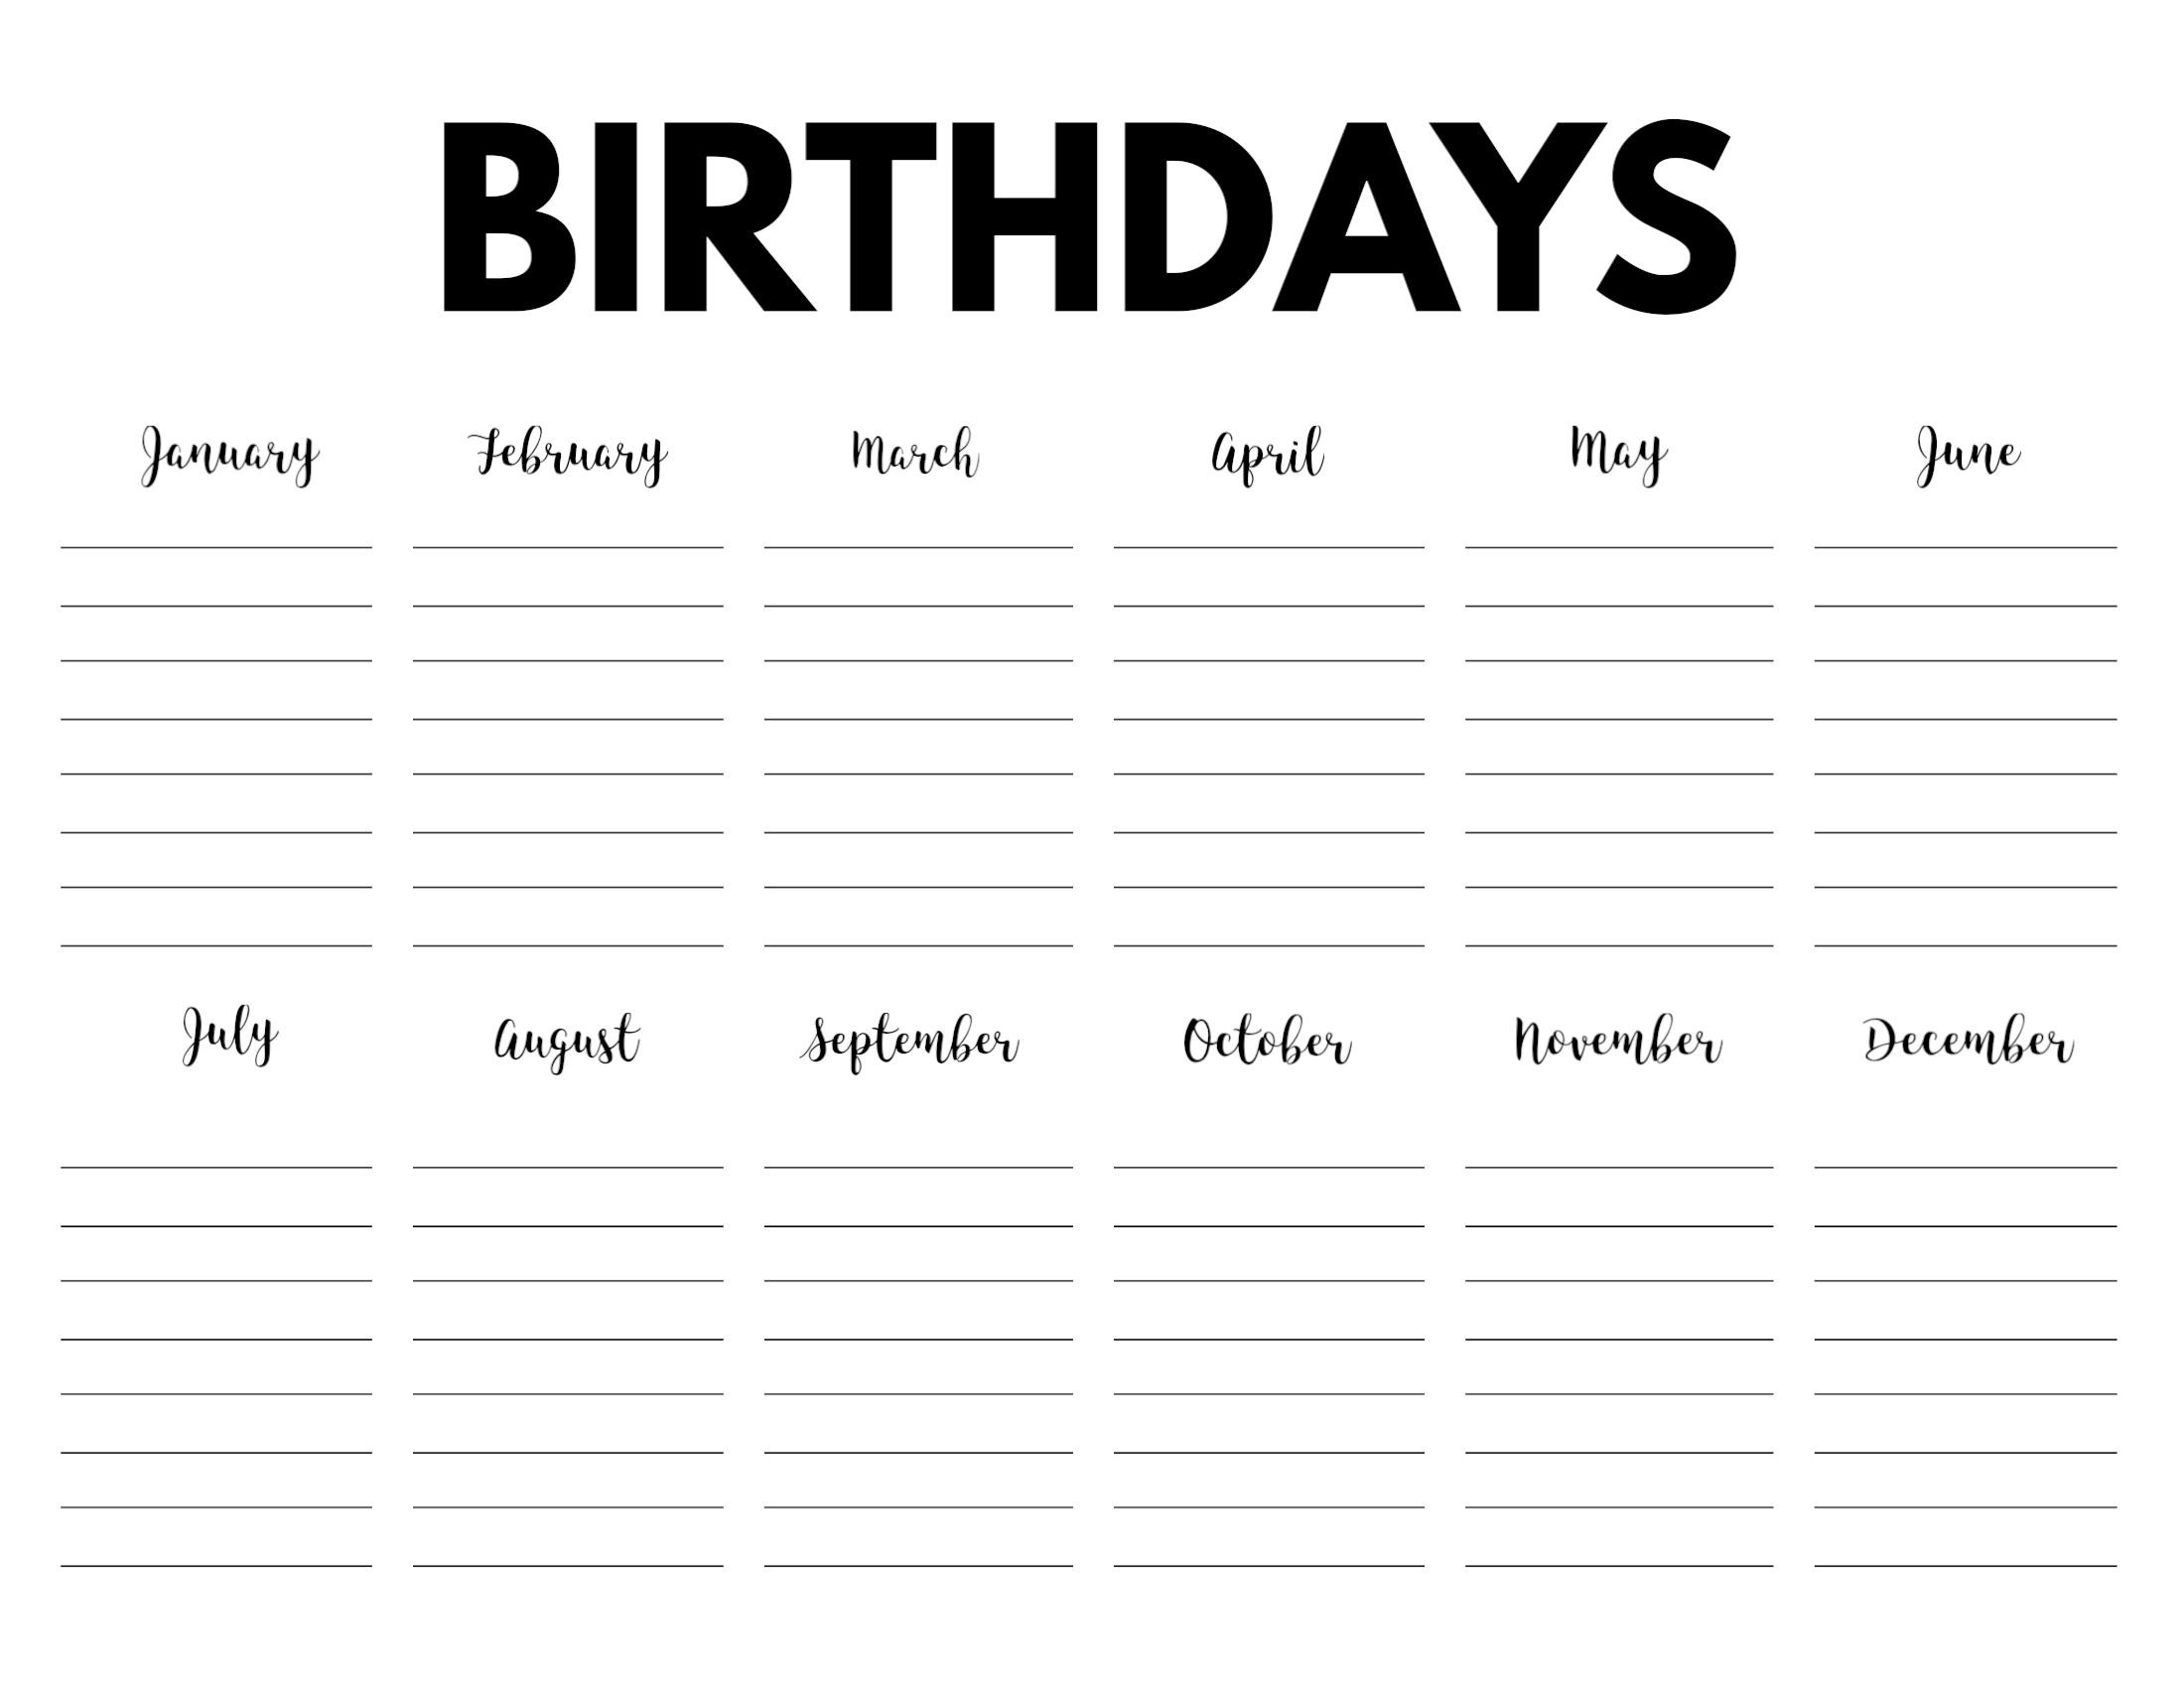 free-birthday-calendar-printable-printable-world-holiday